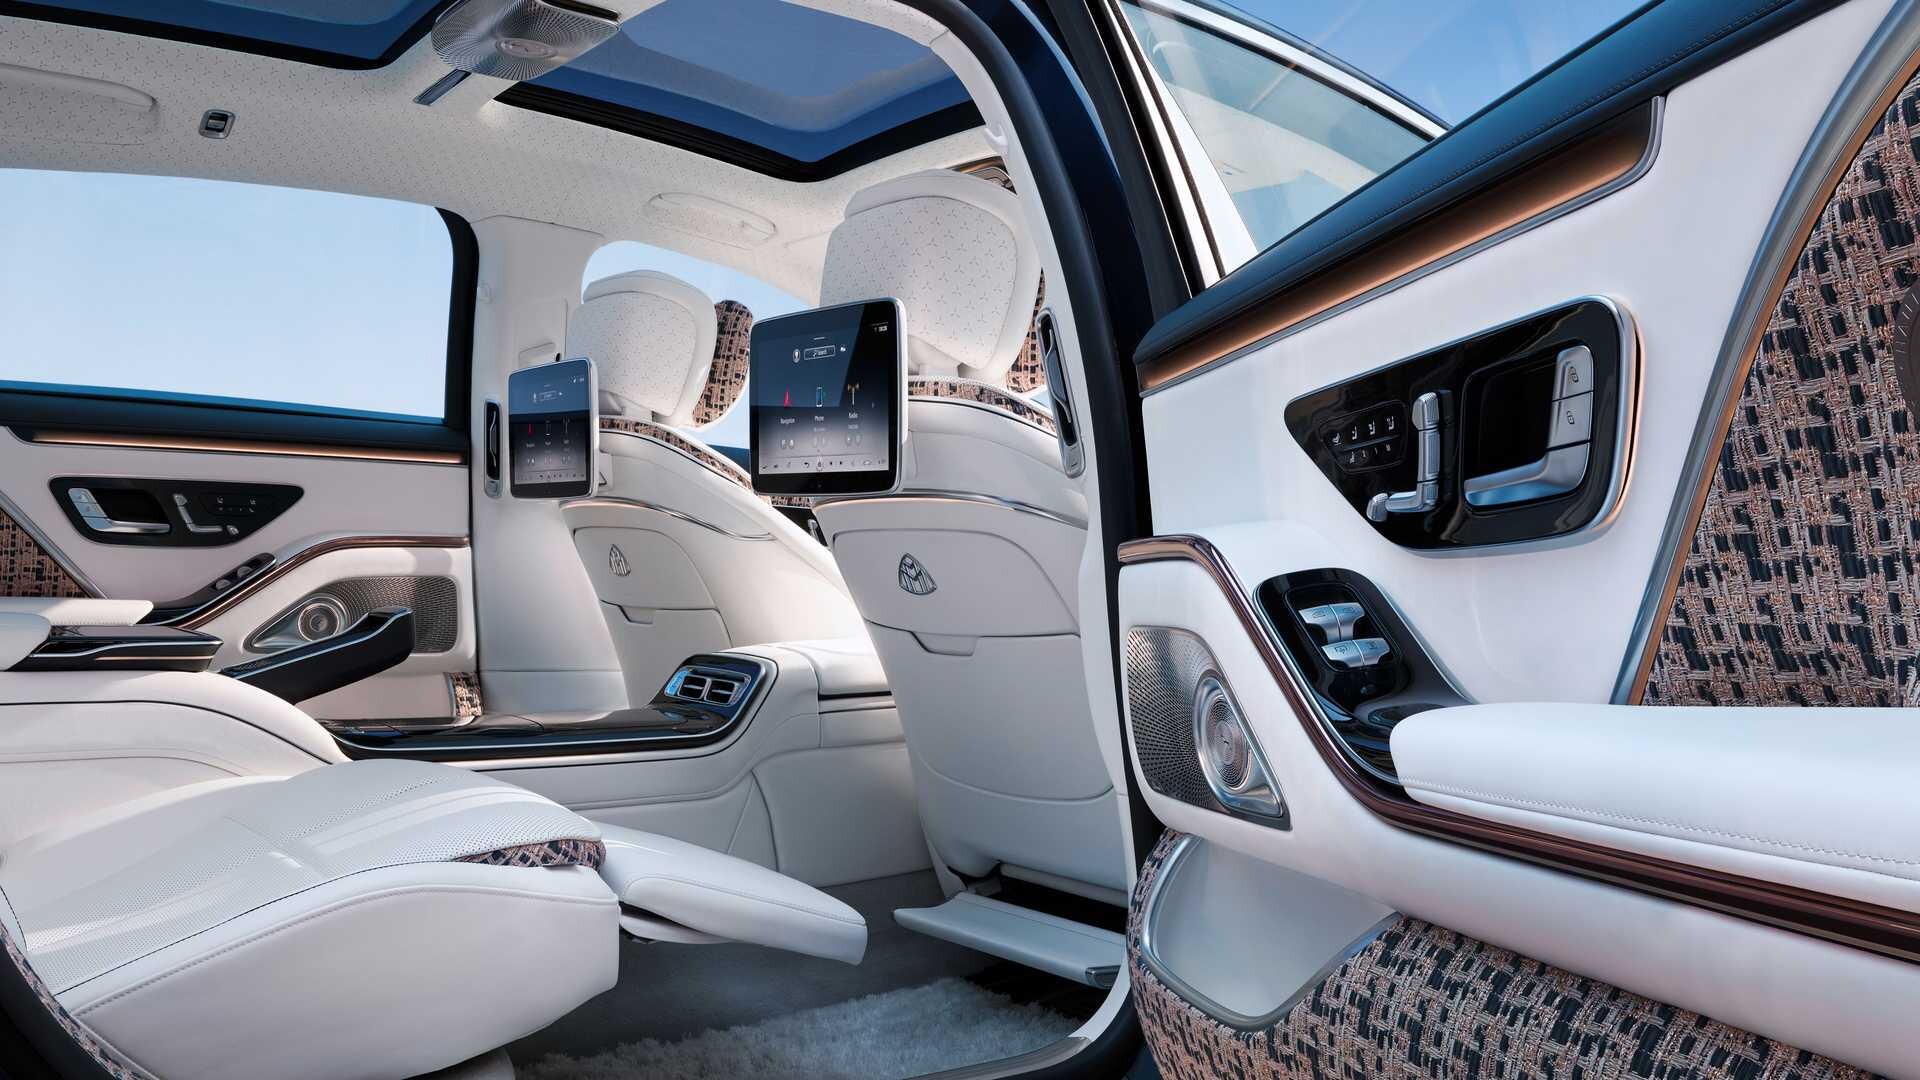 https://citymagazine.si/en/mercedes-maybach-s-haute-voiture-prestige-limousine-for-fashionable-gourmets/mercedes-maybach-s-class-haute-voiture-5/